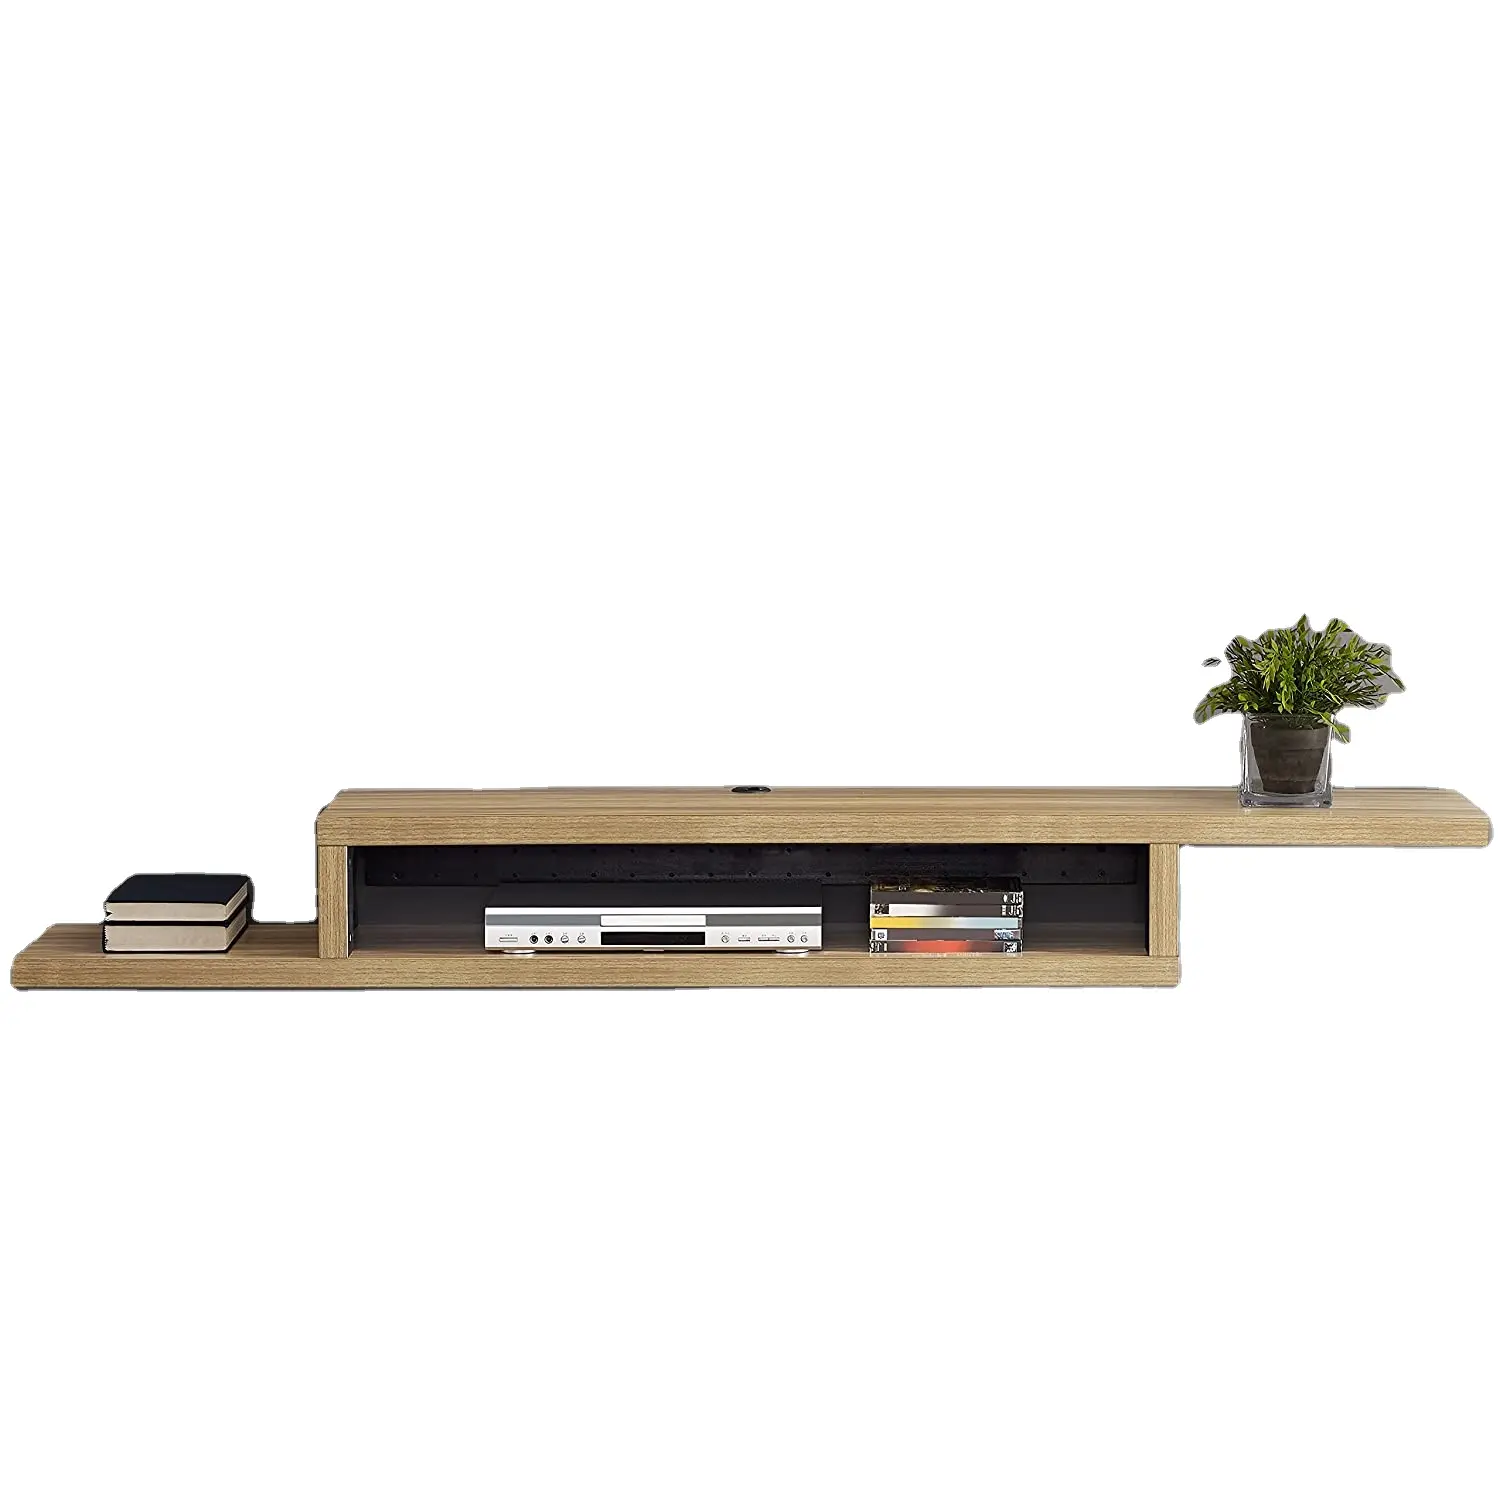 Armario flotante de madera de diseño Simple, soporte de TV montado en la pared, marco negro, mueble clásico para sala de estar